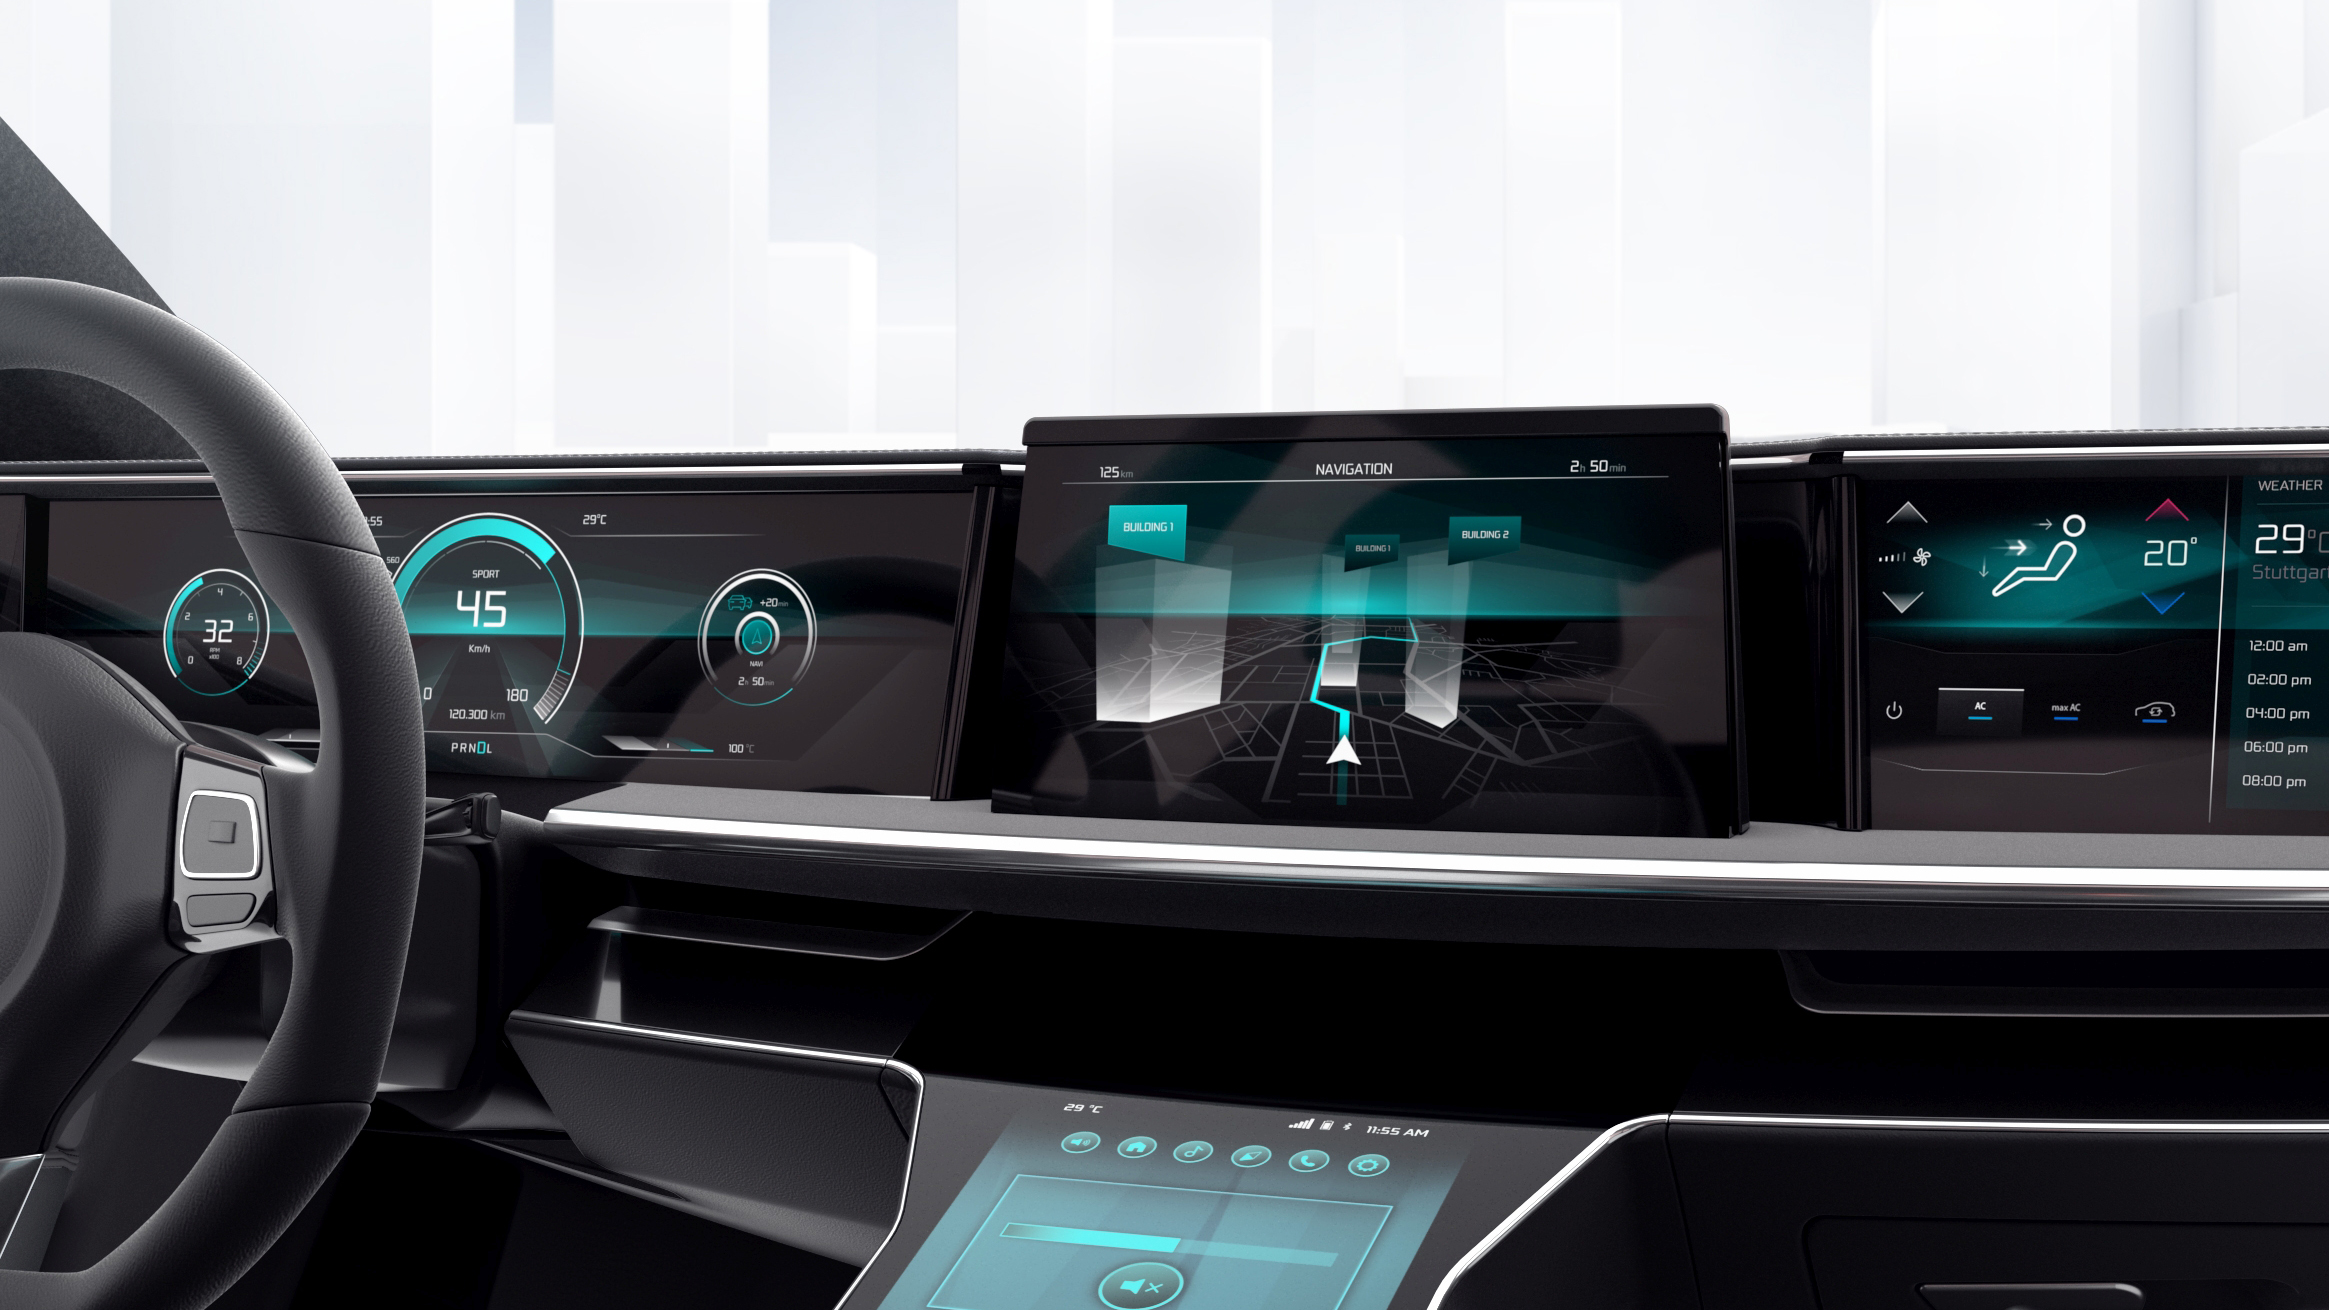 Nowy czujnik Bosch MEMS zapewnia nieprzerwaną nawigację i pomaga realistycznie przedstawić ruchy pojazdu.